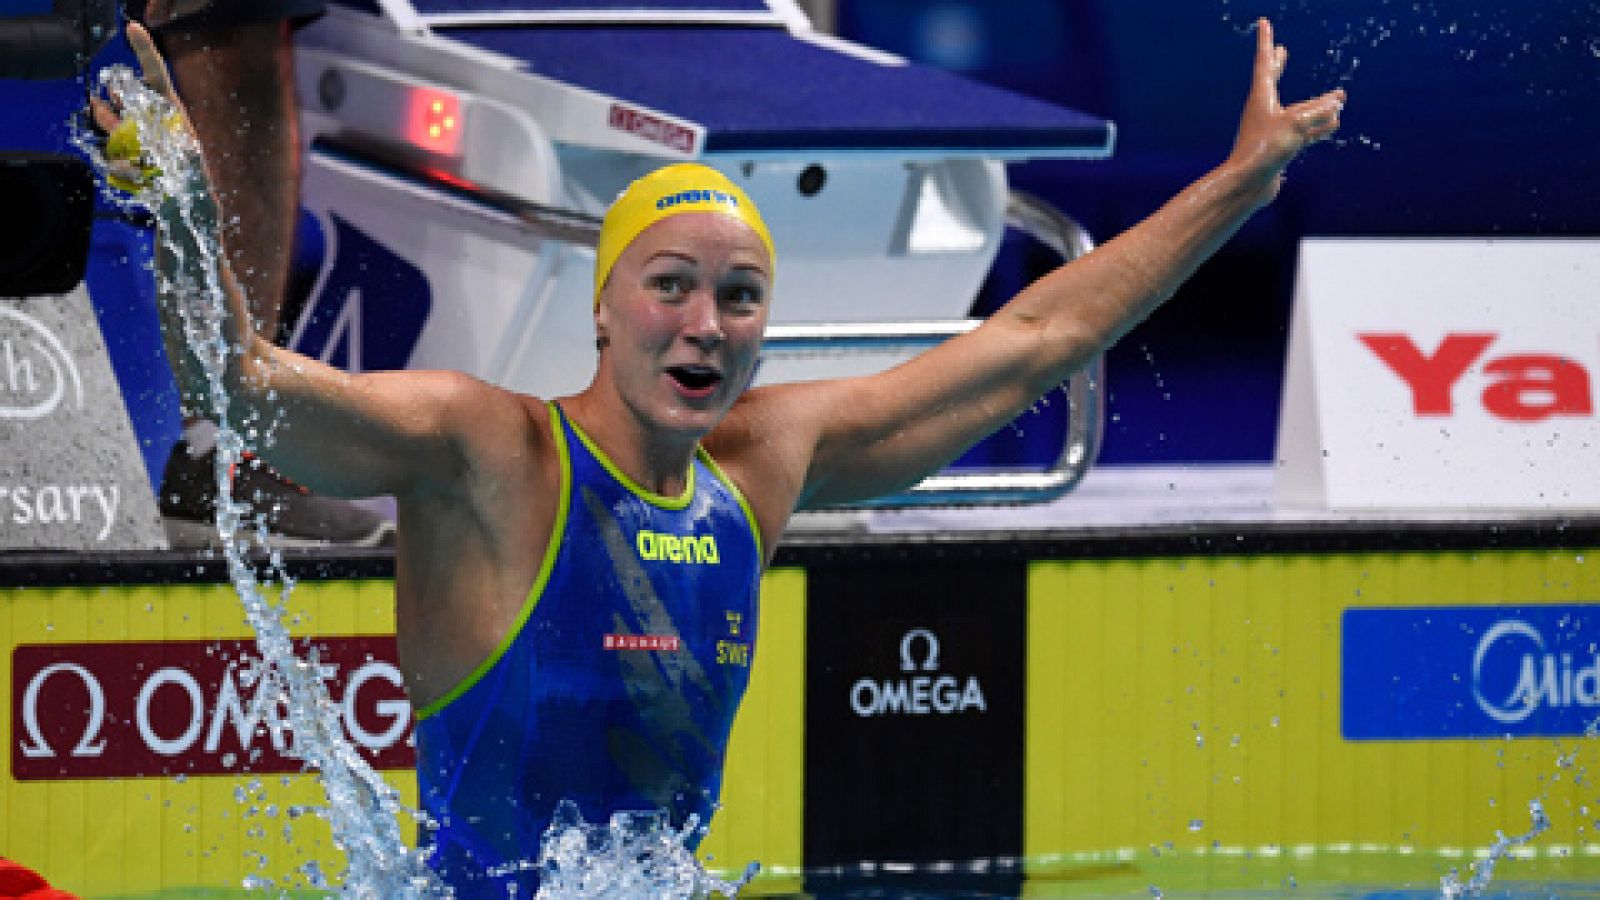 Mundial de Budapest | Natación: La sueca Sjöstrom bate el récord mundial de los 50 libre (23.67)